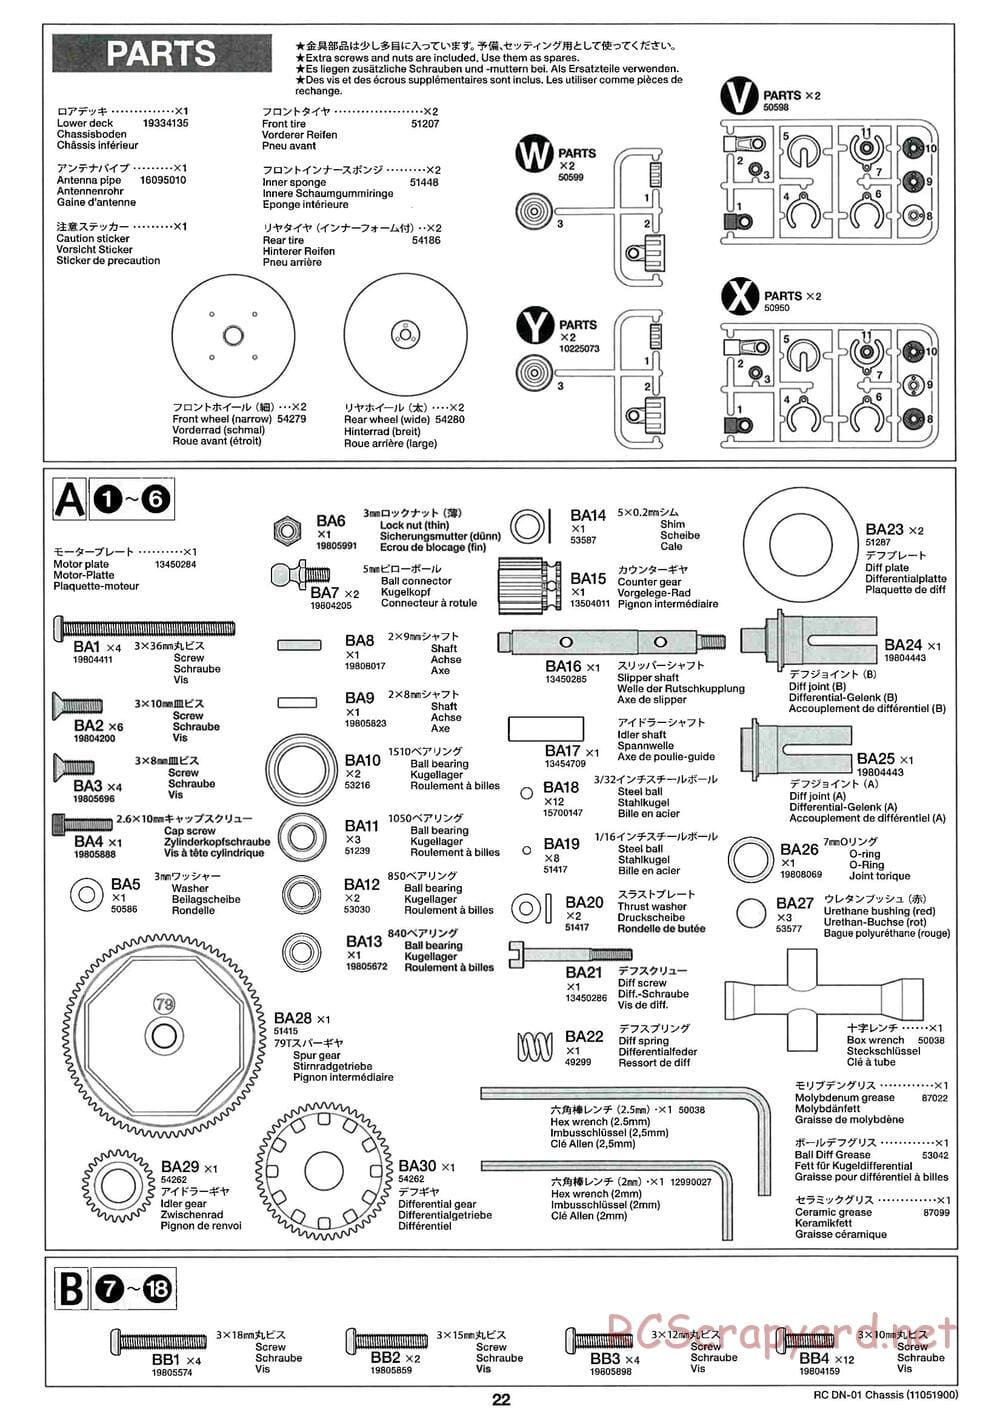 Tamiya - DN-01 Chassis - Manual - Page 22